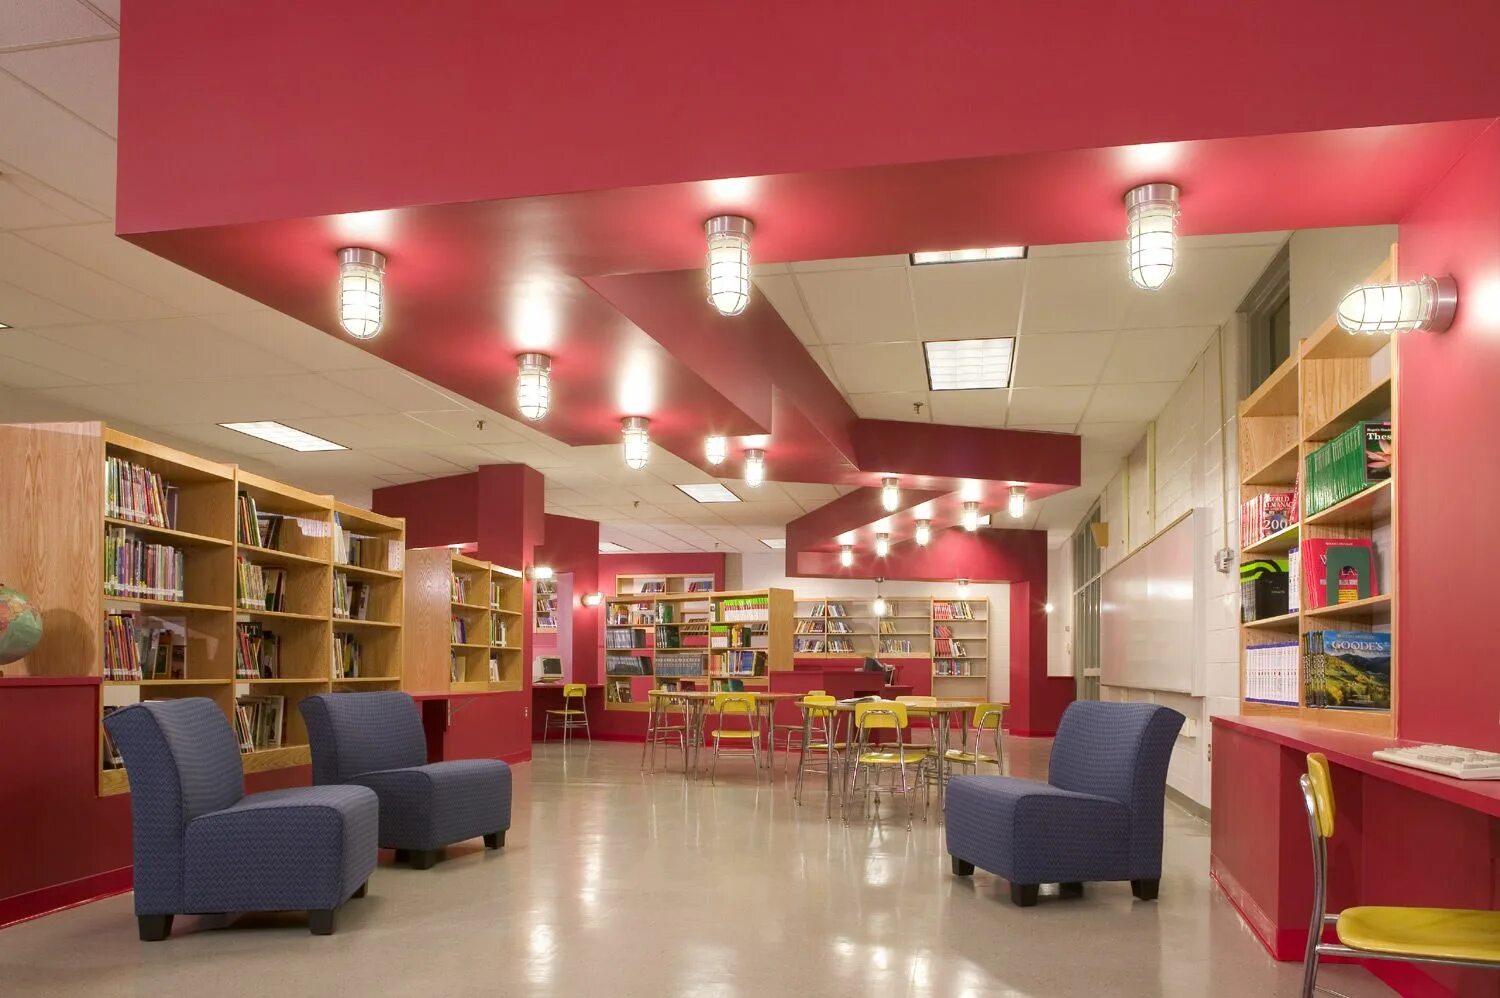 School library. Освещение в библиотеке. Интерьер читального зала. Освещение современных библиотек. Освещение детской библиотеки.